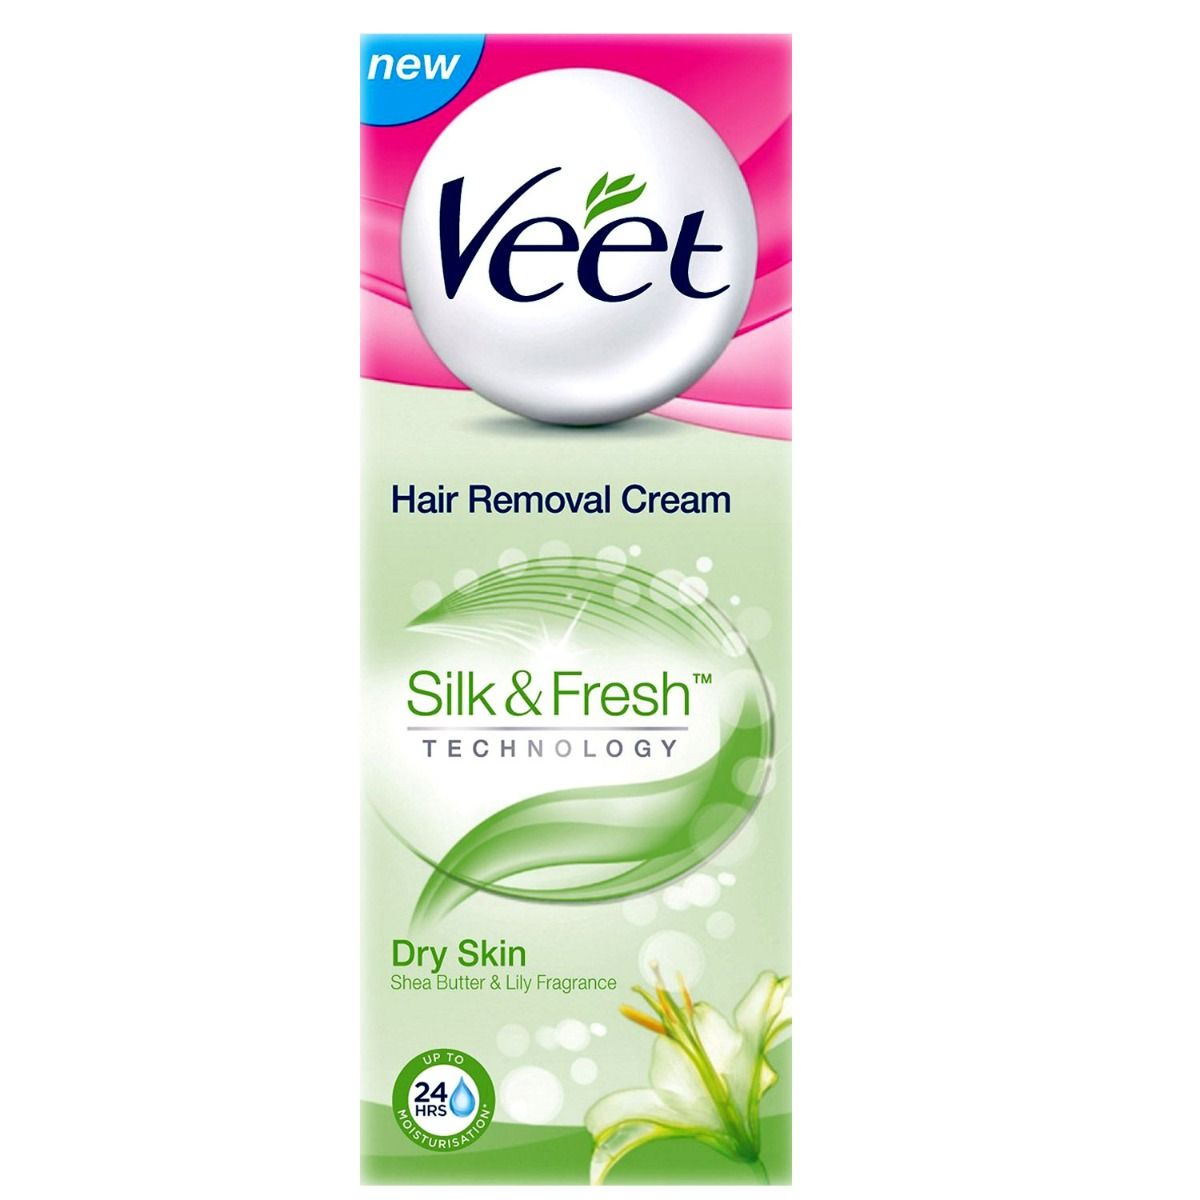 Buy Veet Silk & Fresh Hair Removal Cream for Dry Skin, 32 gm Online